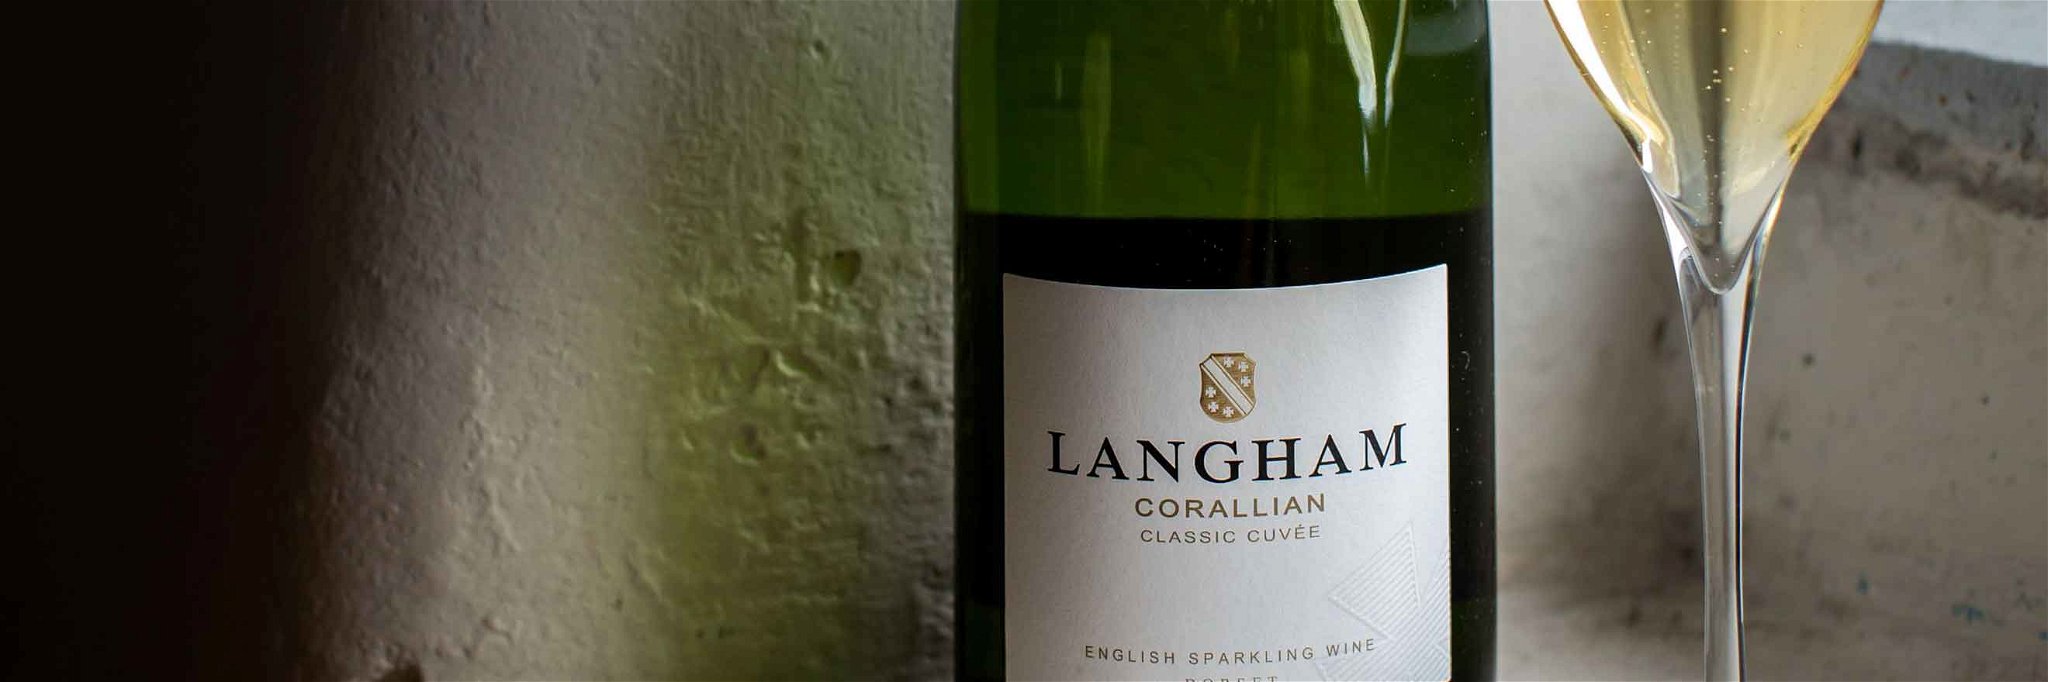 Langham Estate's Corallian Classic Cuvée